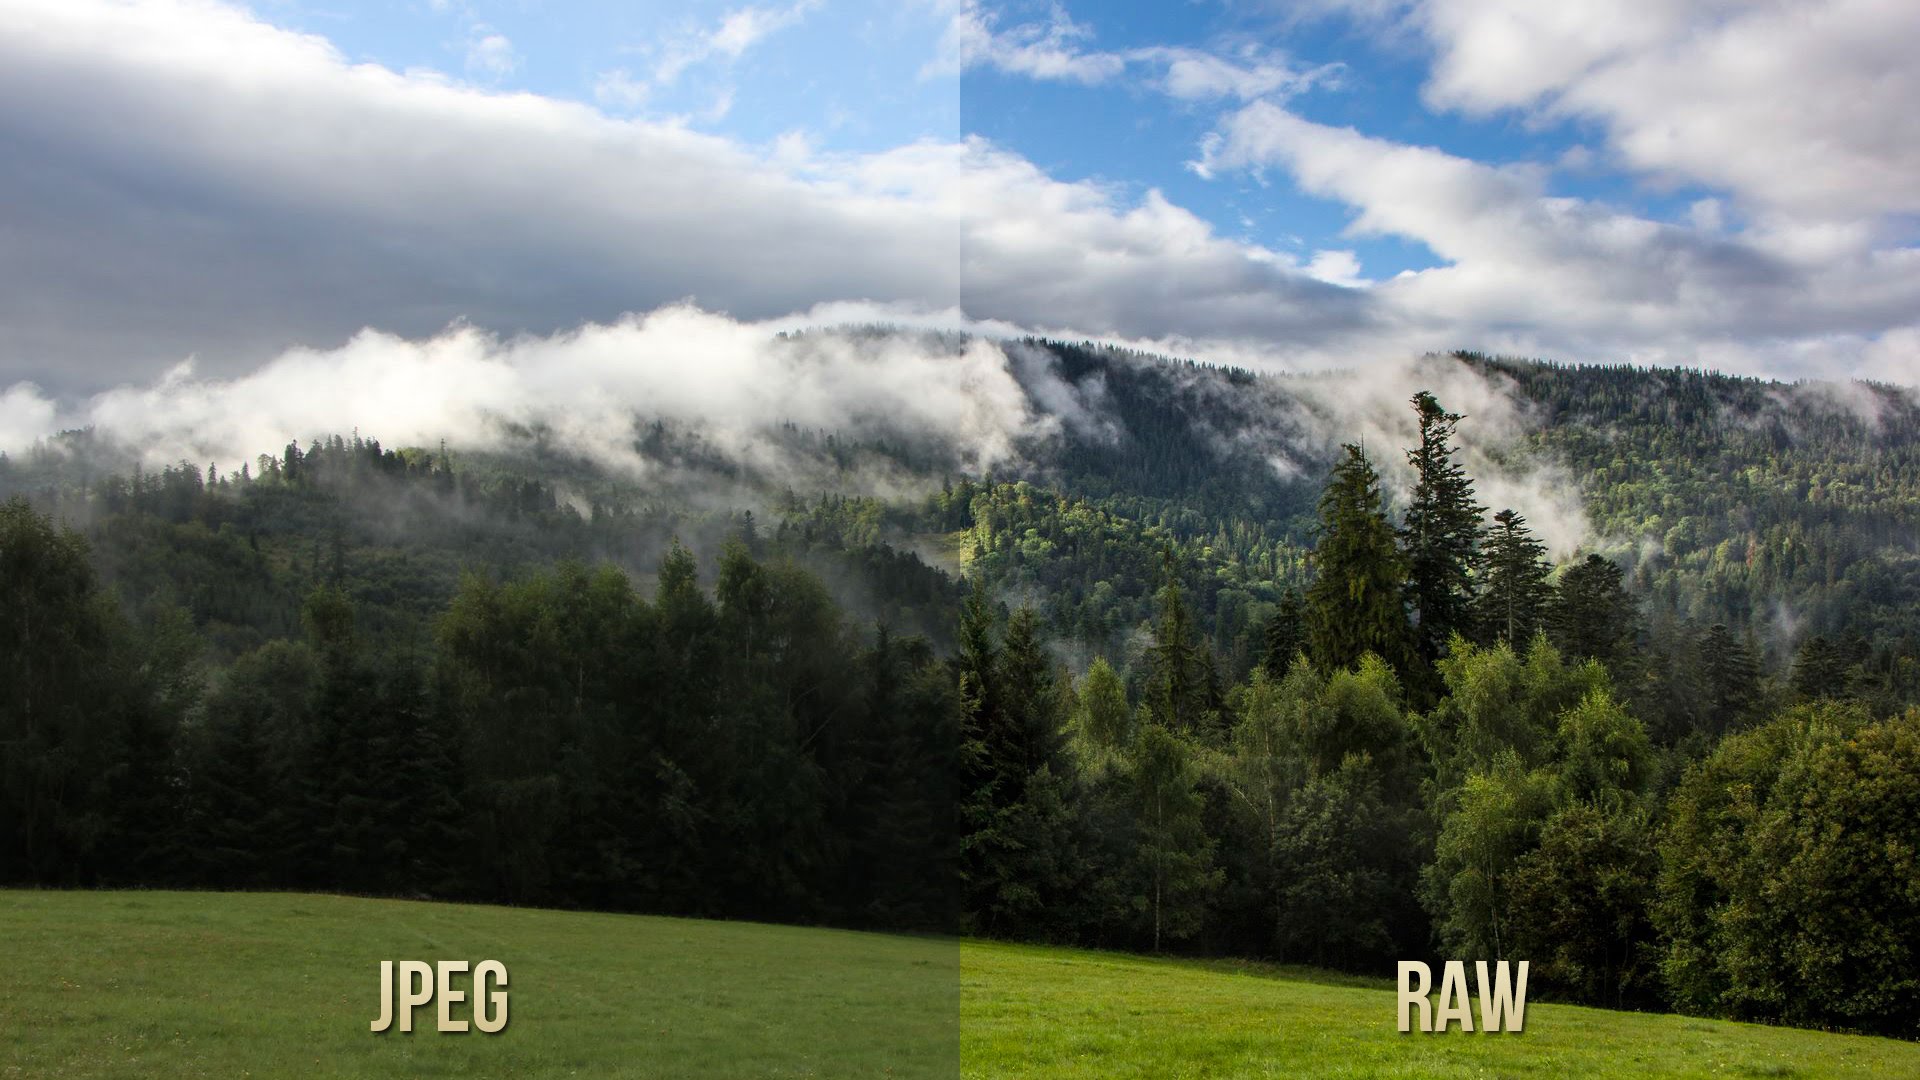 ماهي ملفات RAW في التصوير الفوتوغرافي وما الفرق بينها وبين ملفات JPEG